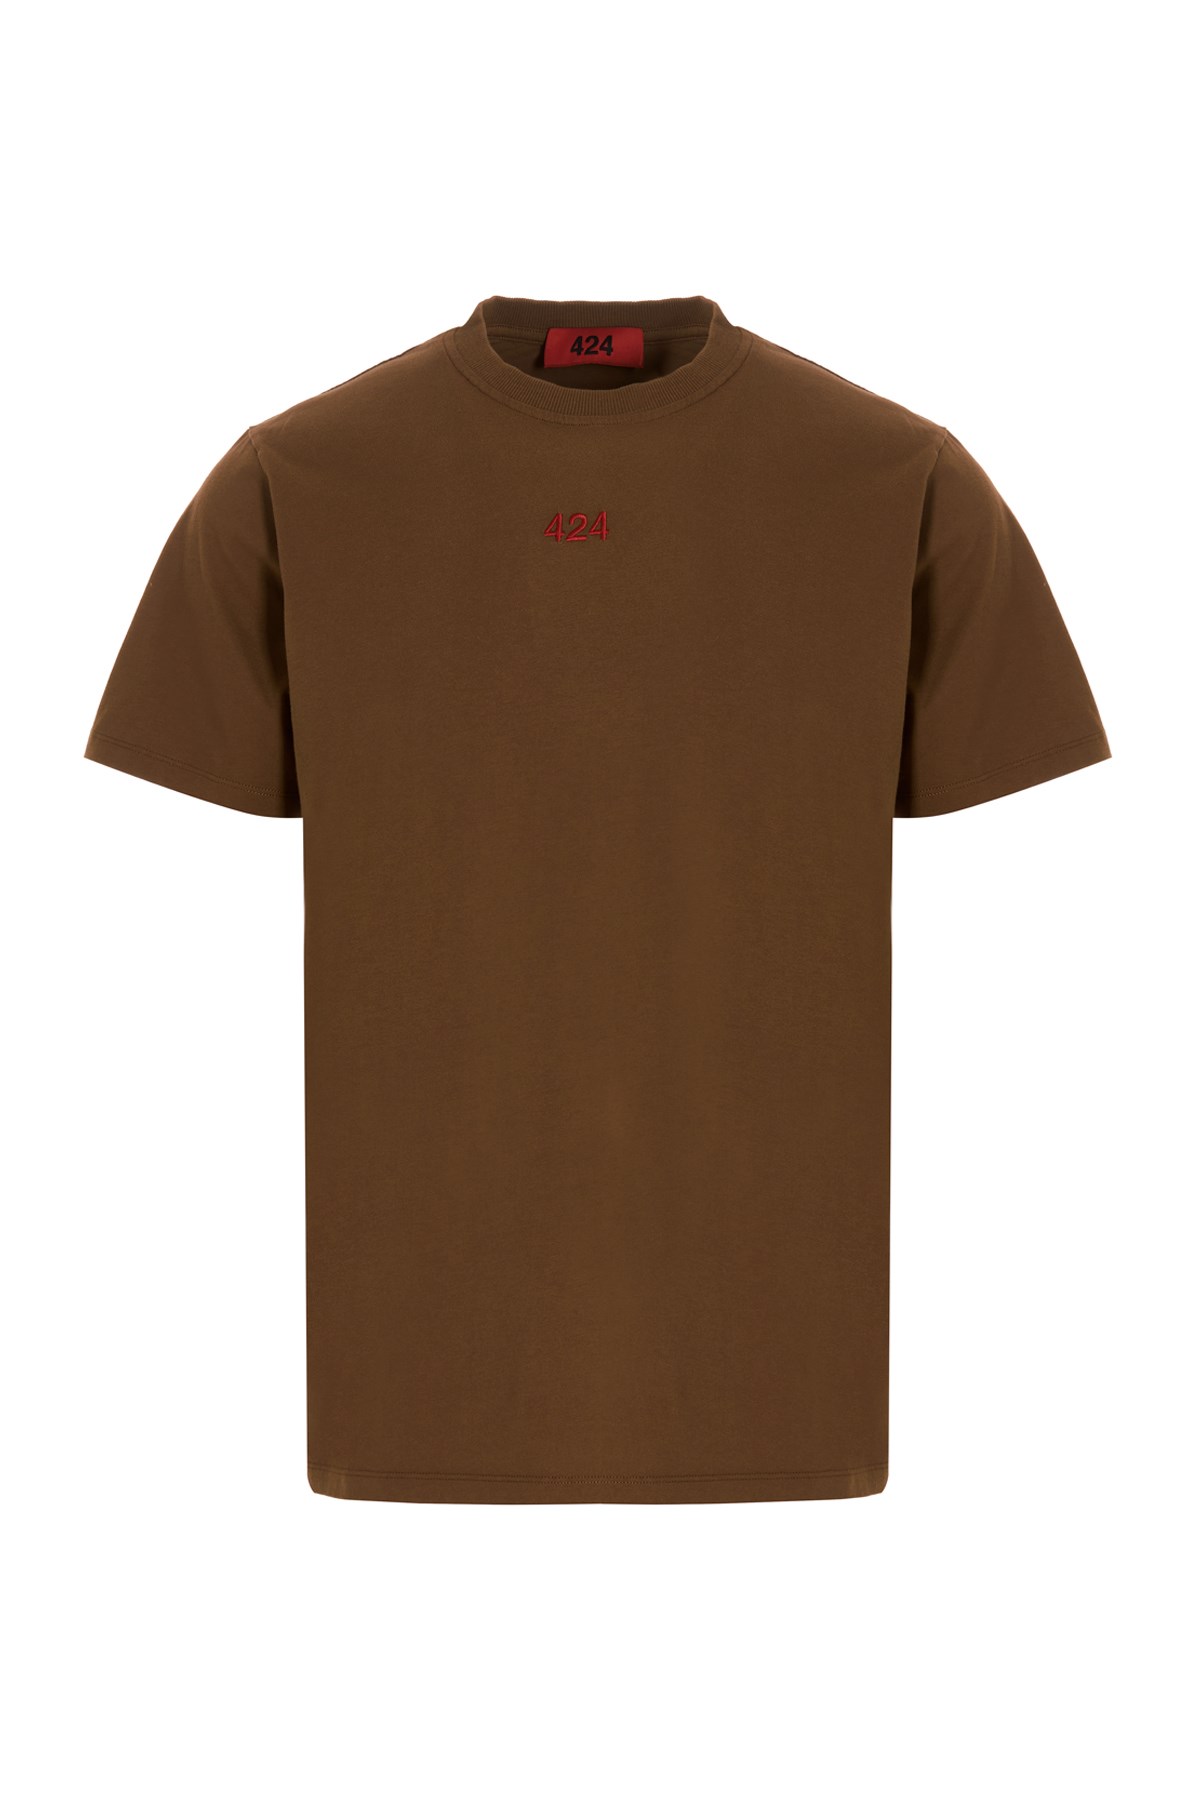 424 ‘Alias’ T-Shirt